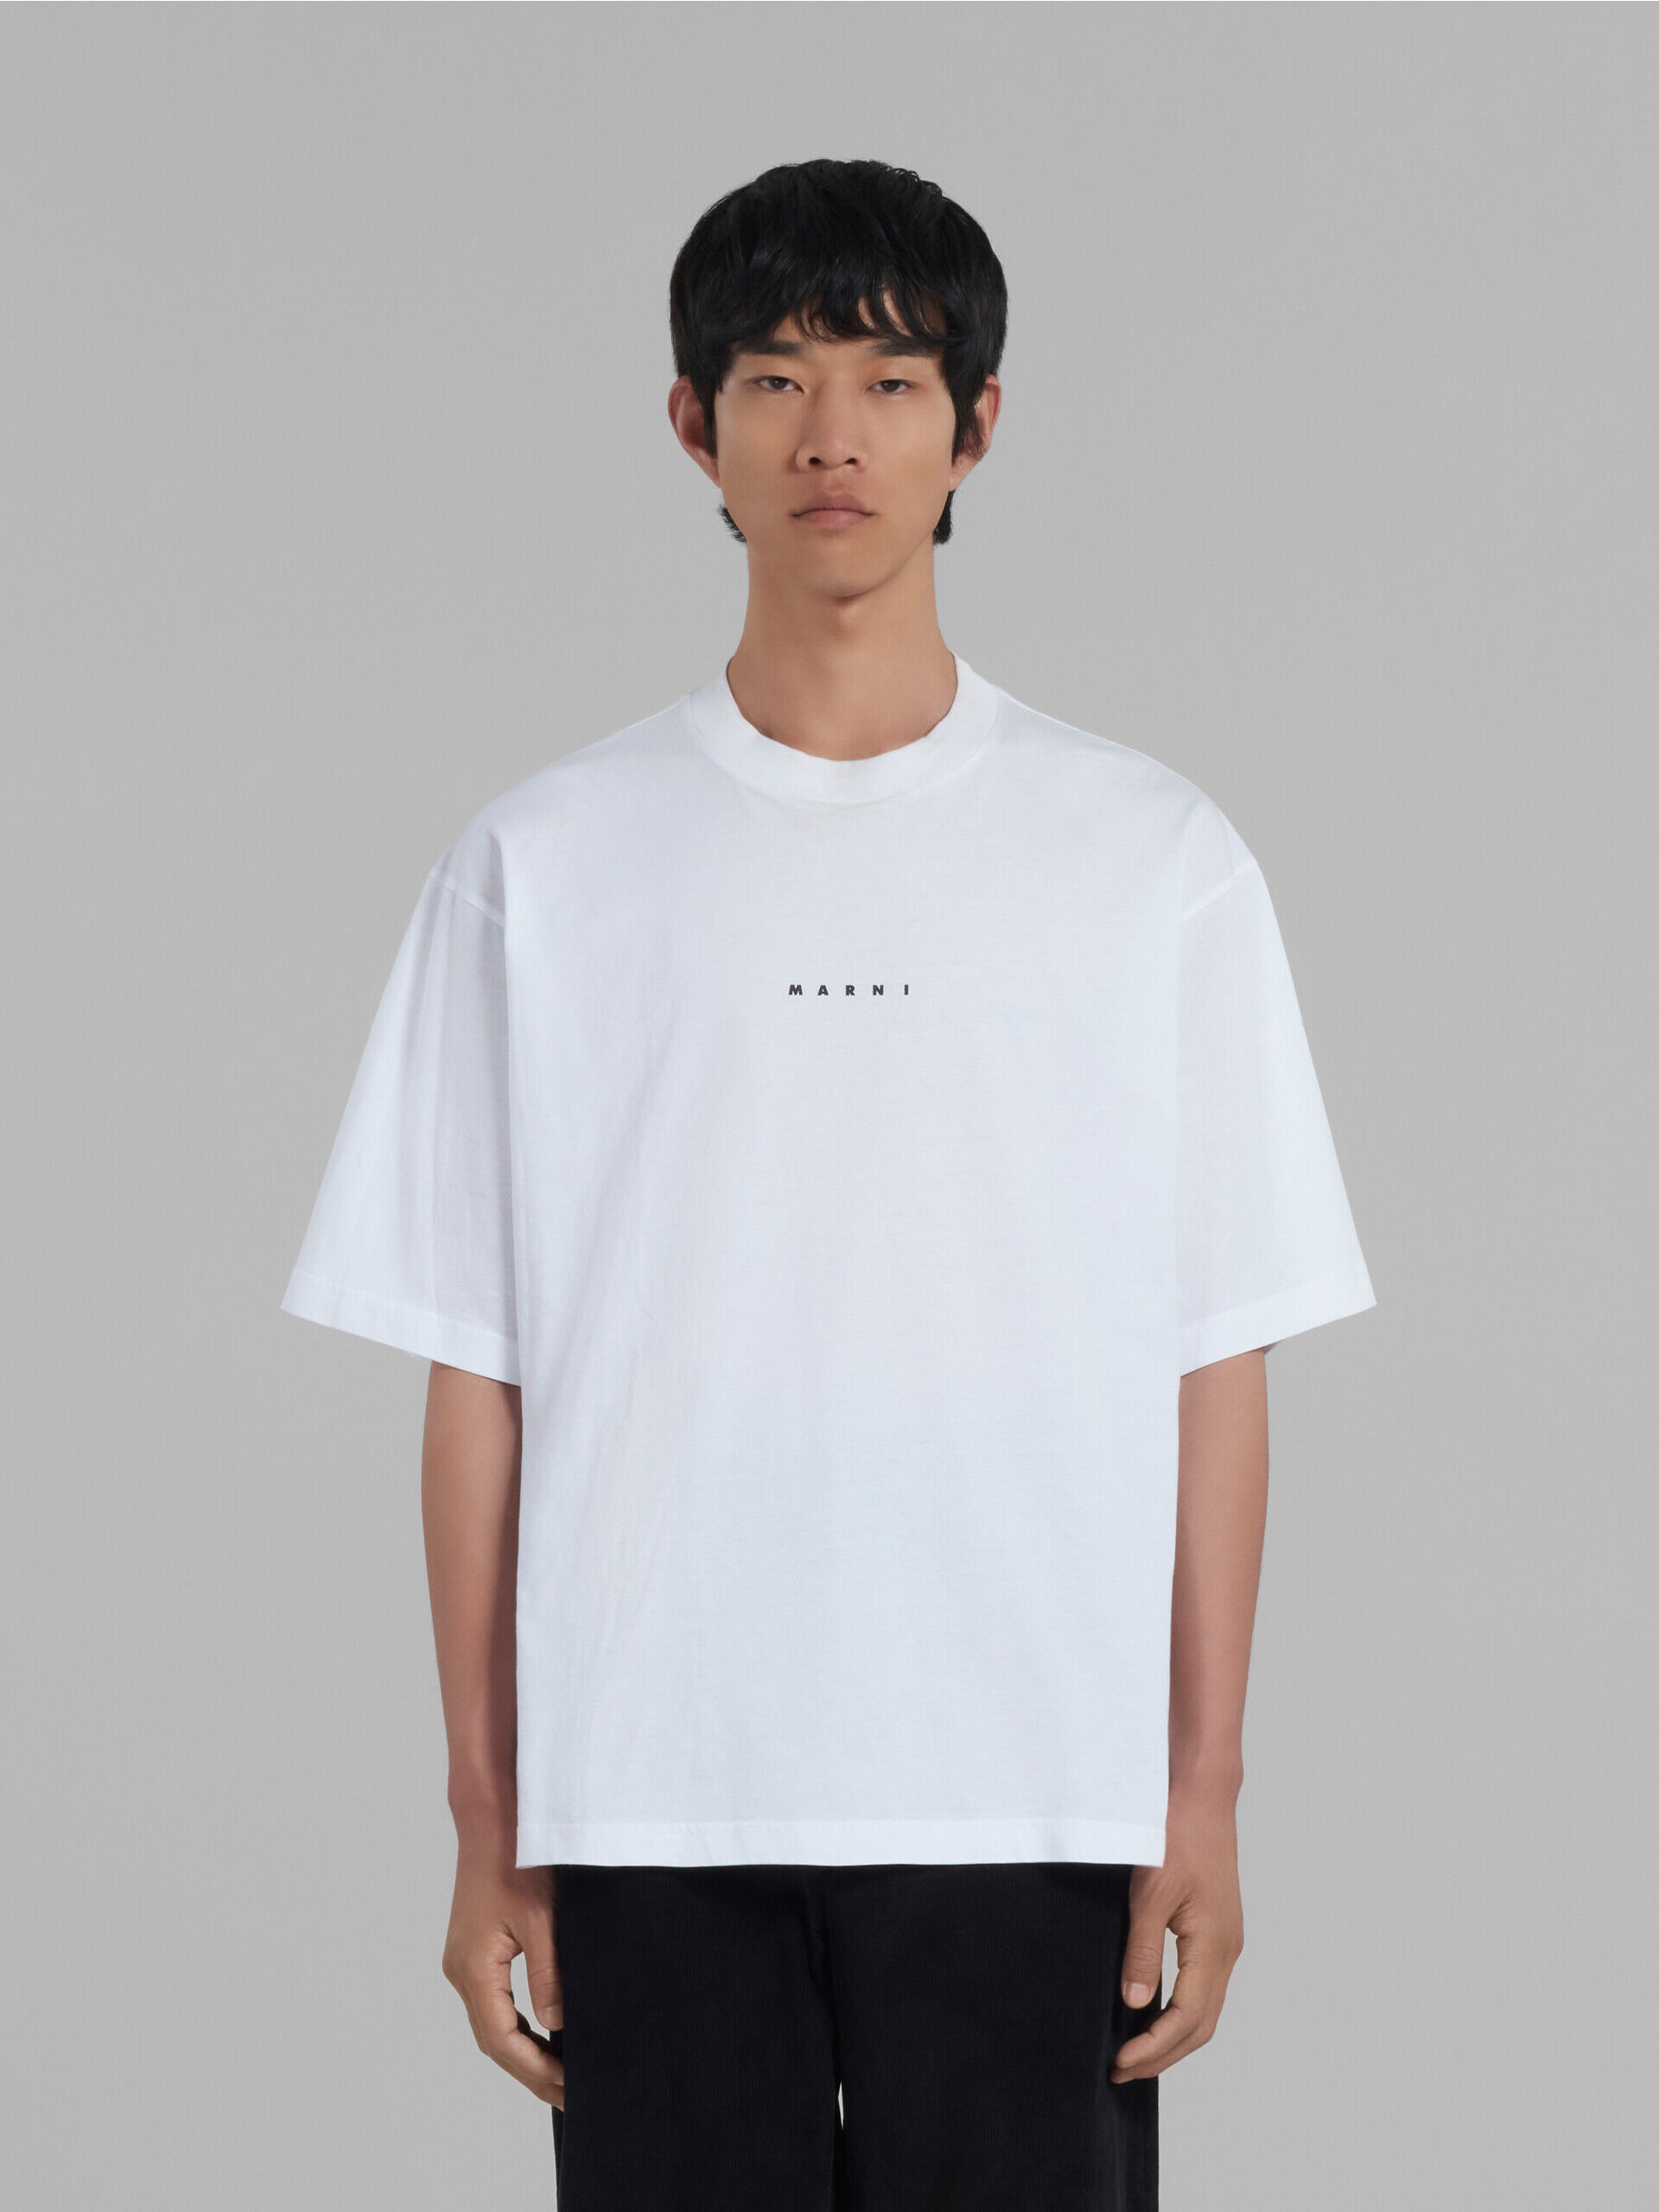 【新品・正規品】マルニ ロゴプリントTシャツ 48サイズ ブラックブラック